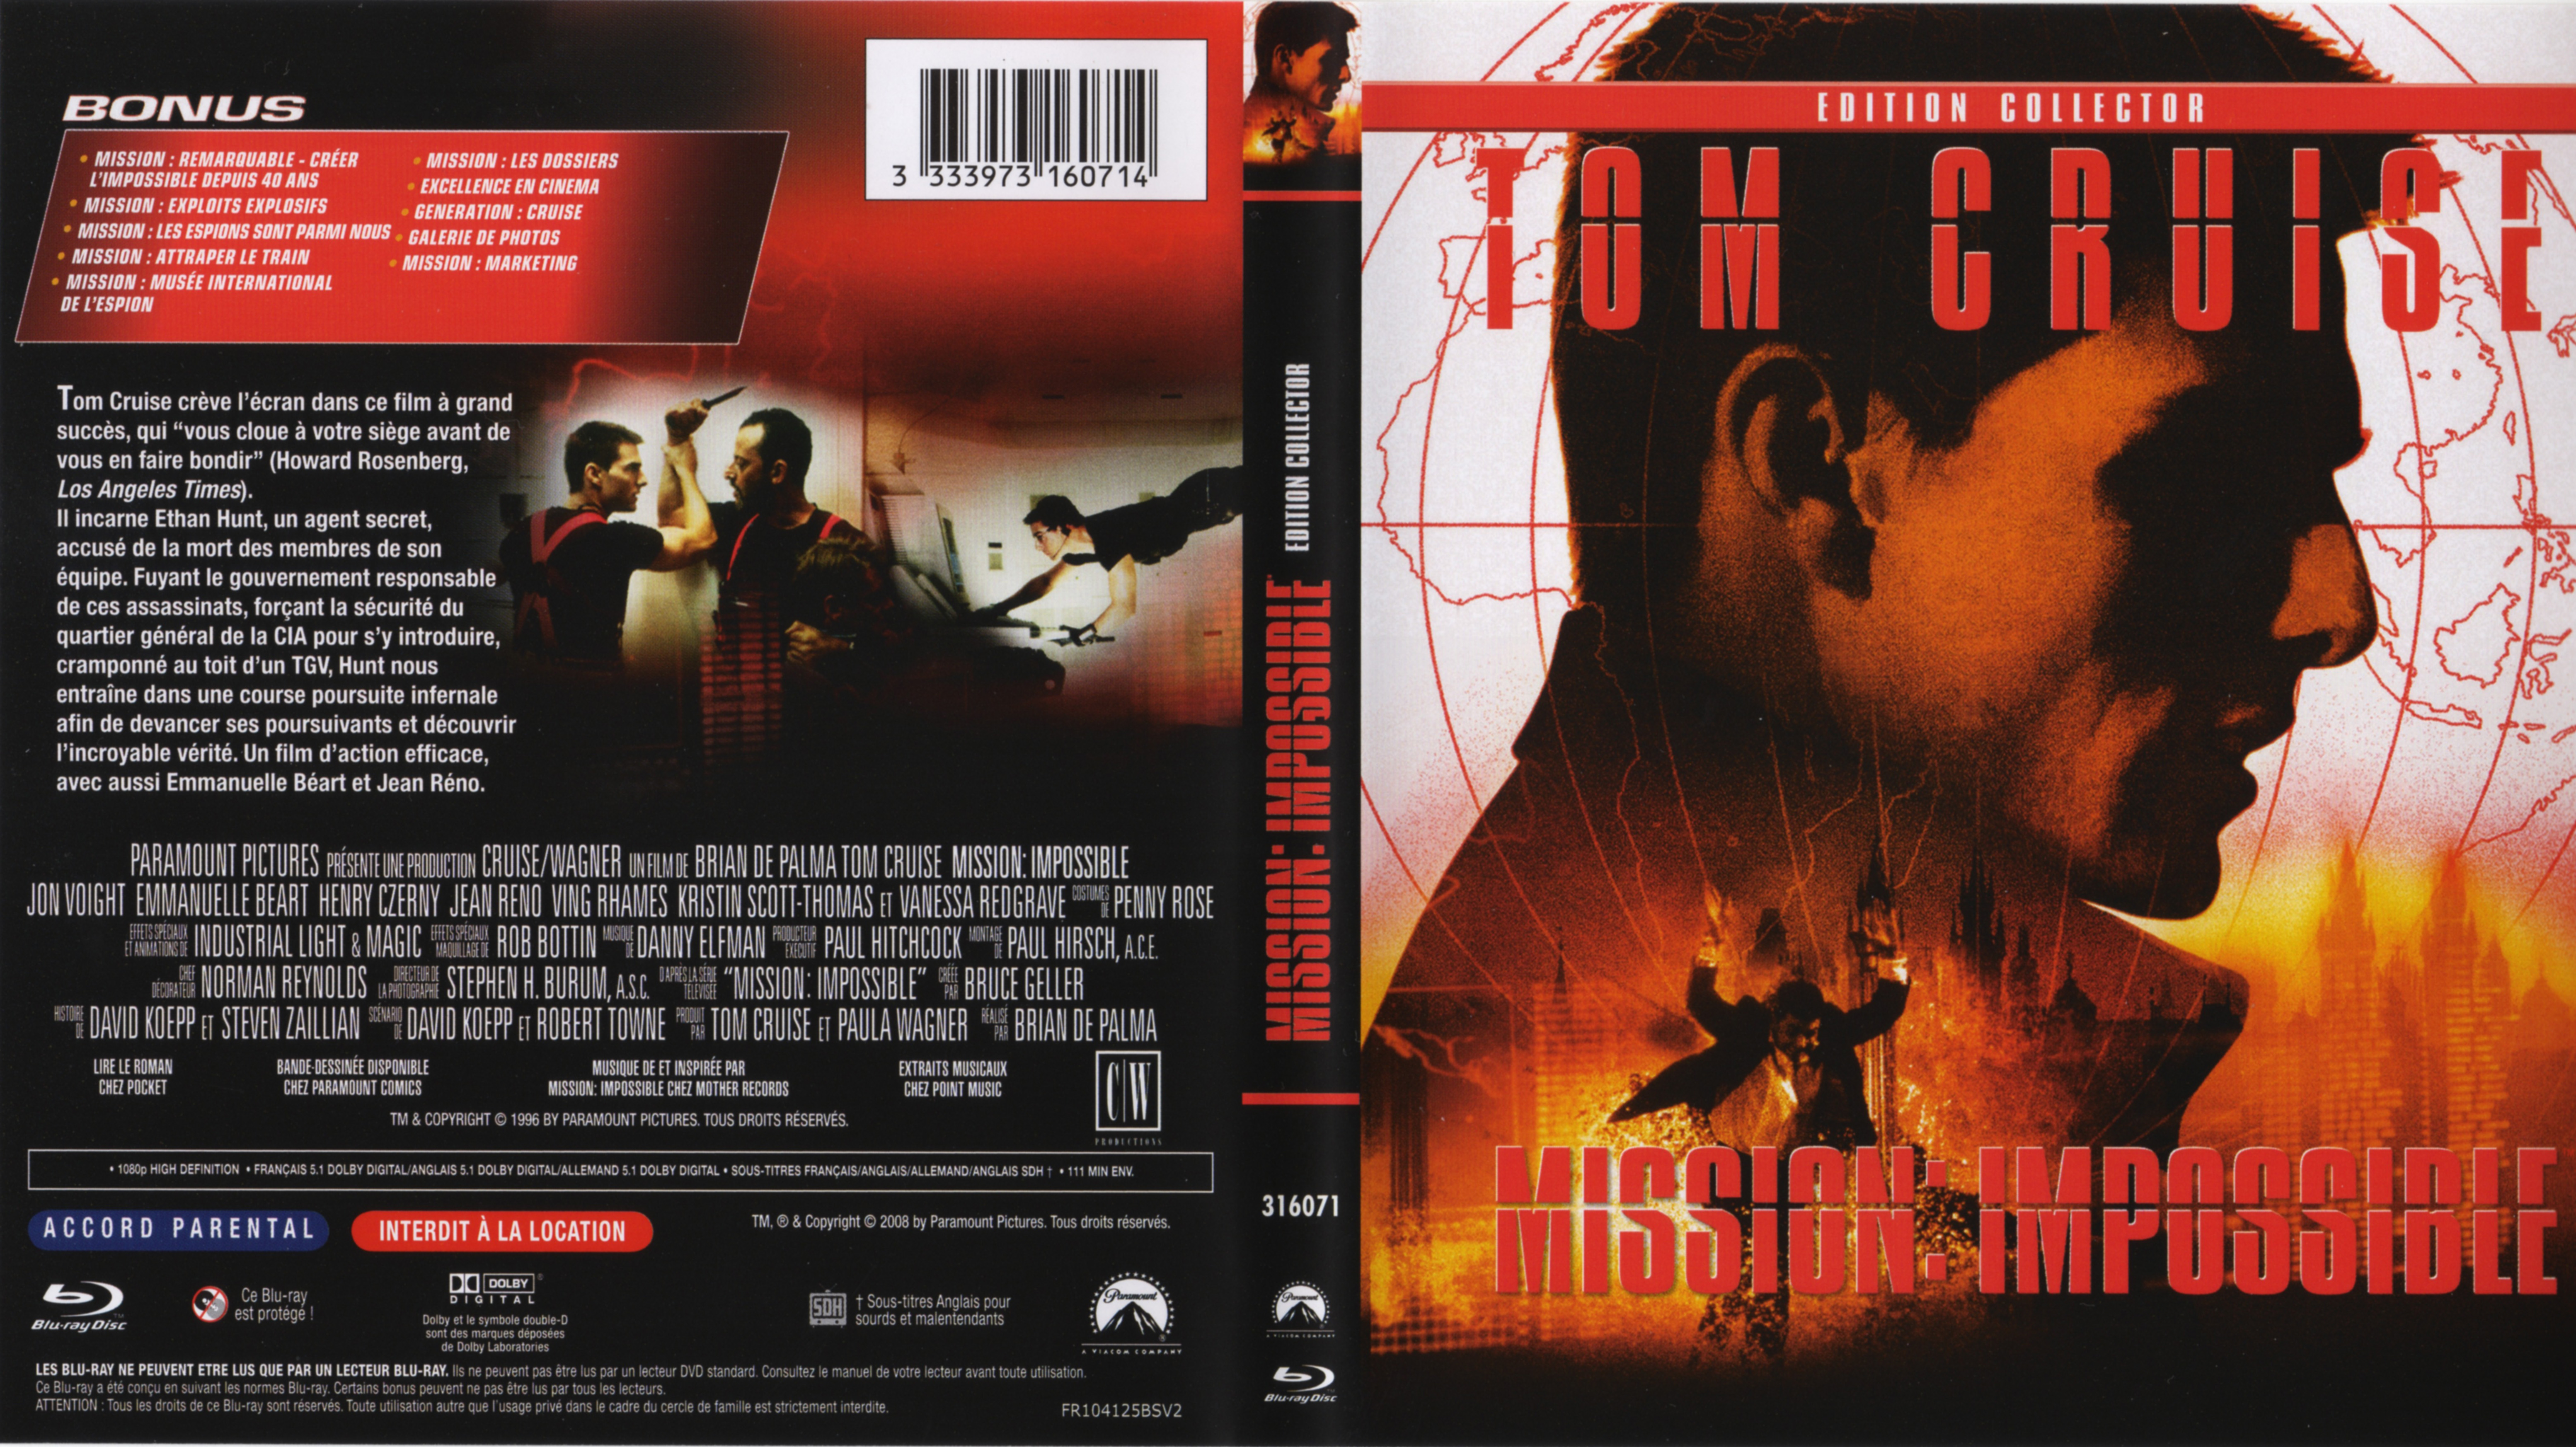 Jaquette Dvd De Mission Impossible Blu Ray Cinéma Passion 